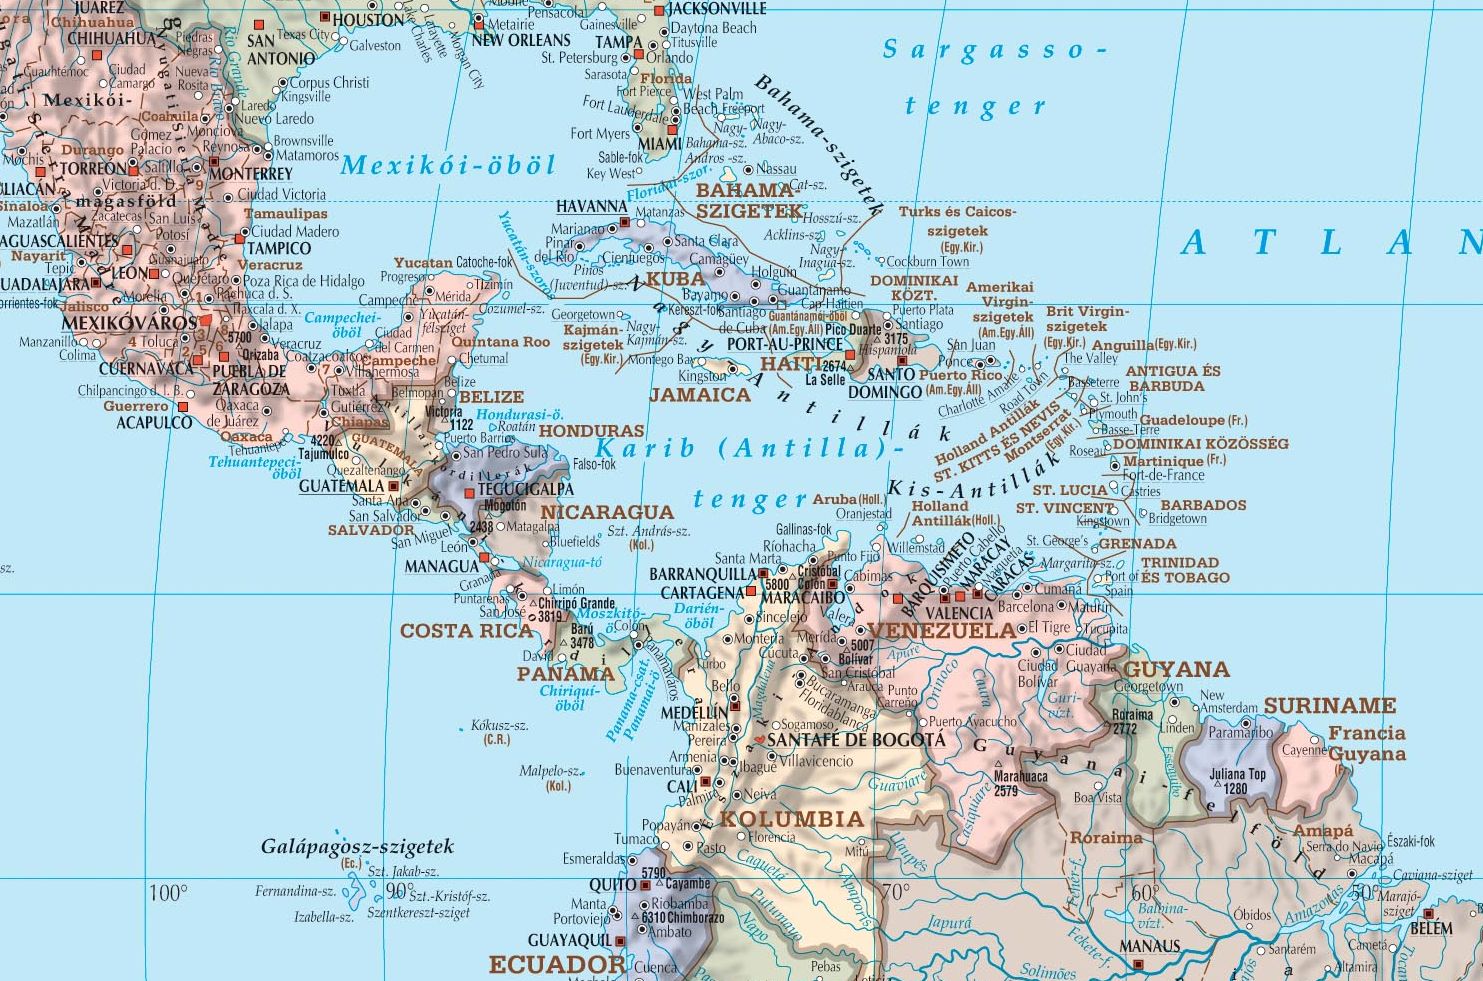 Világtérkép: Karib-szigetek minta